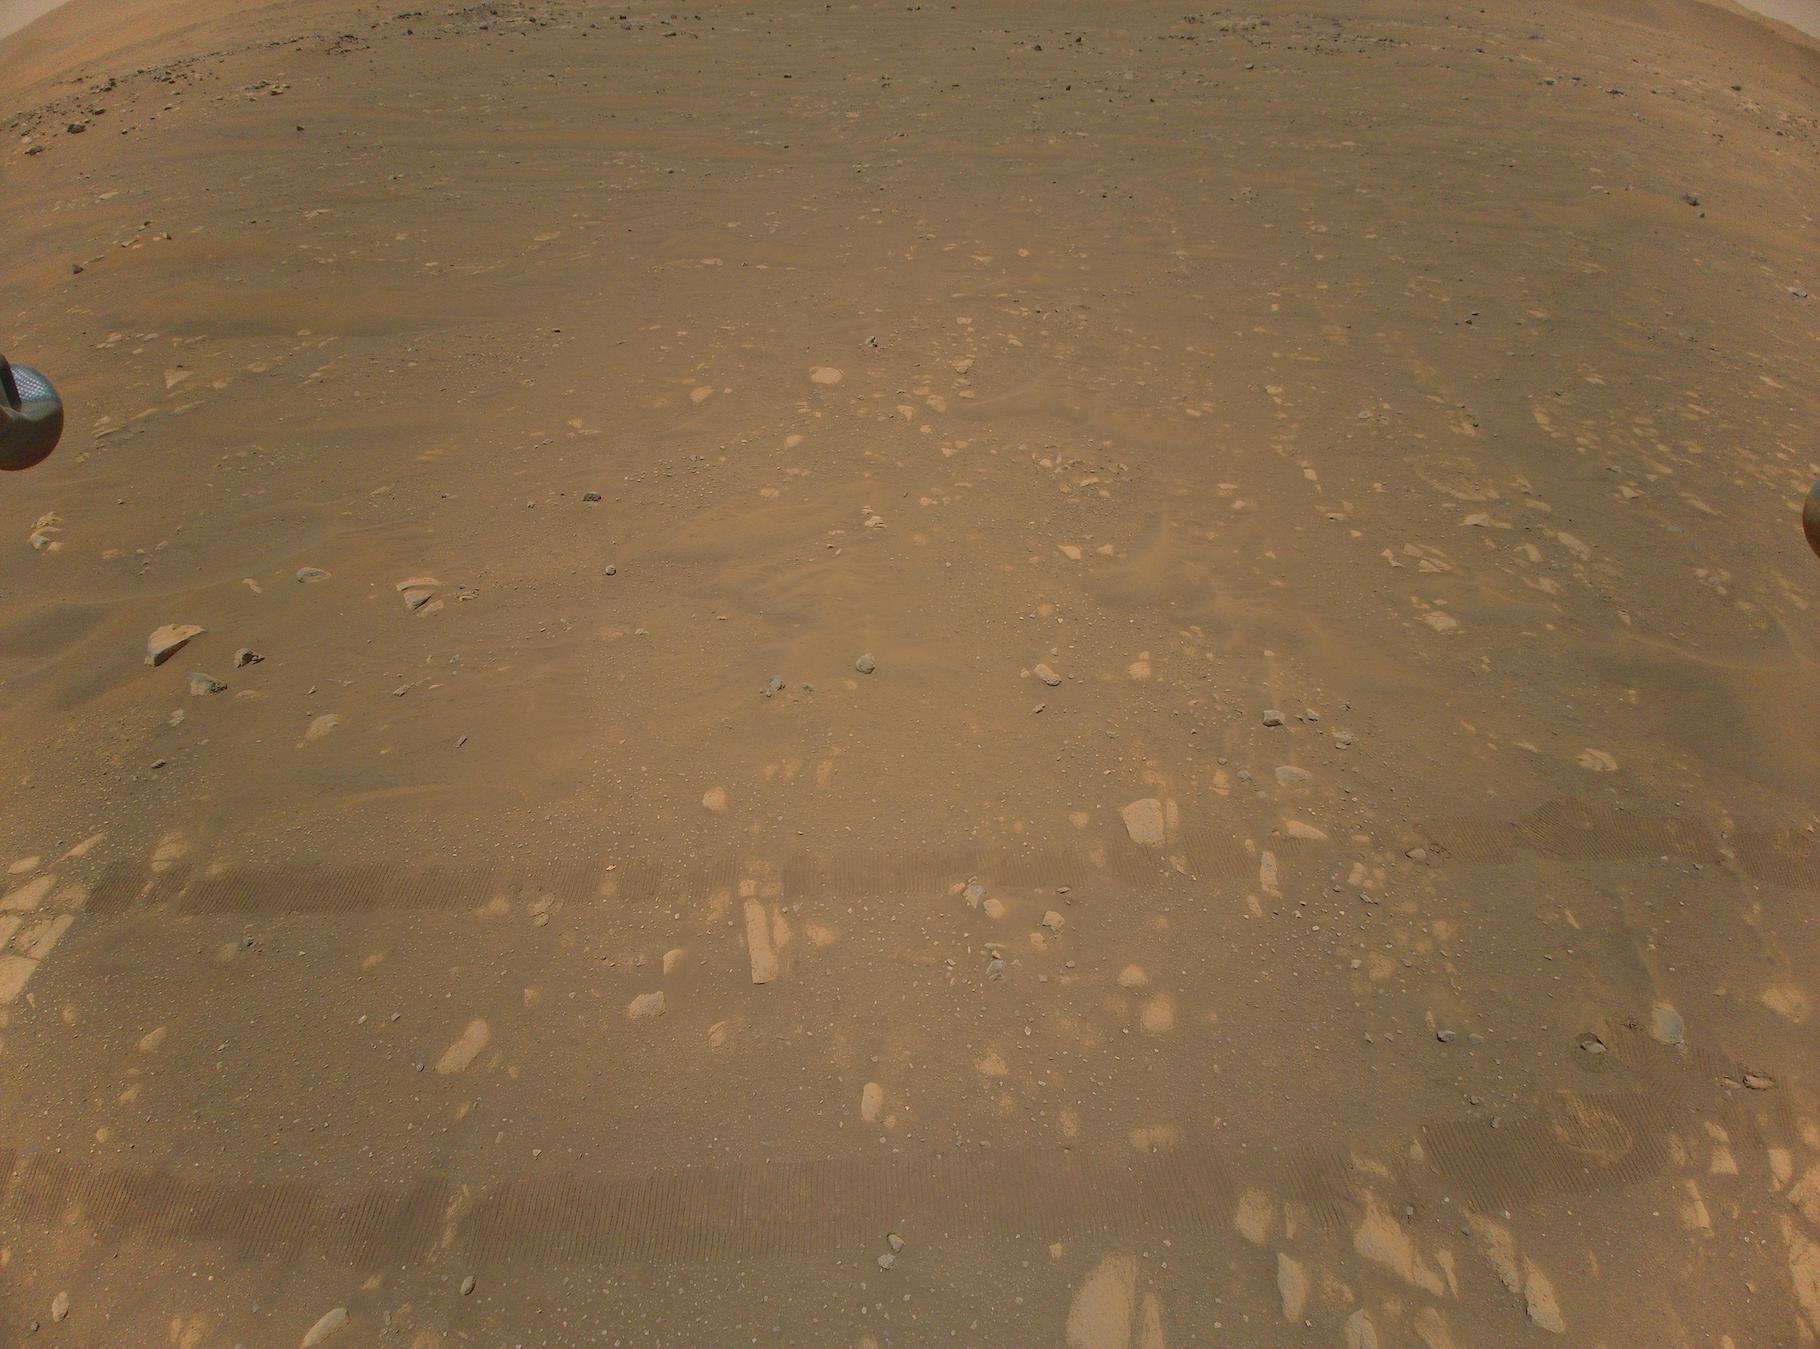 Sur cette troisième image couleur renvoyée par Ingenuity aux ingénieurs de la Nasa, on devine encore les traces laissées par le rover Perseverance au sol. Mais d’autres images le montrent bien plus clairement. © Nasa, JPL-Caltech